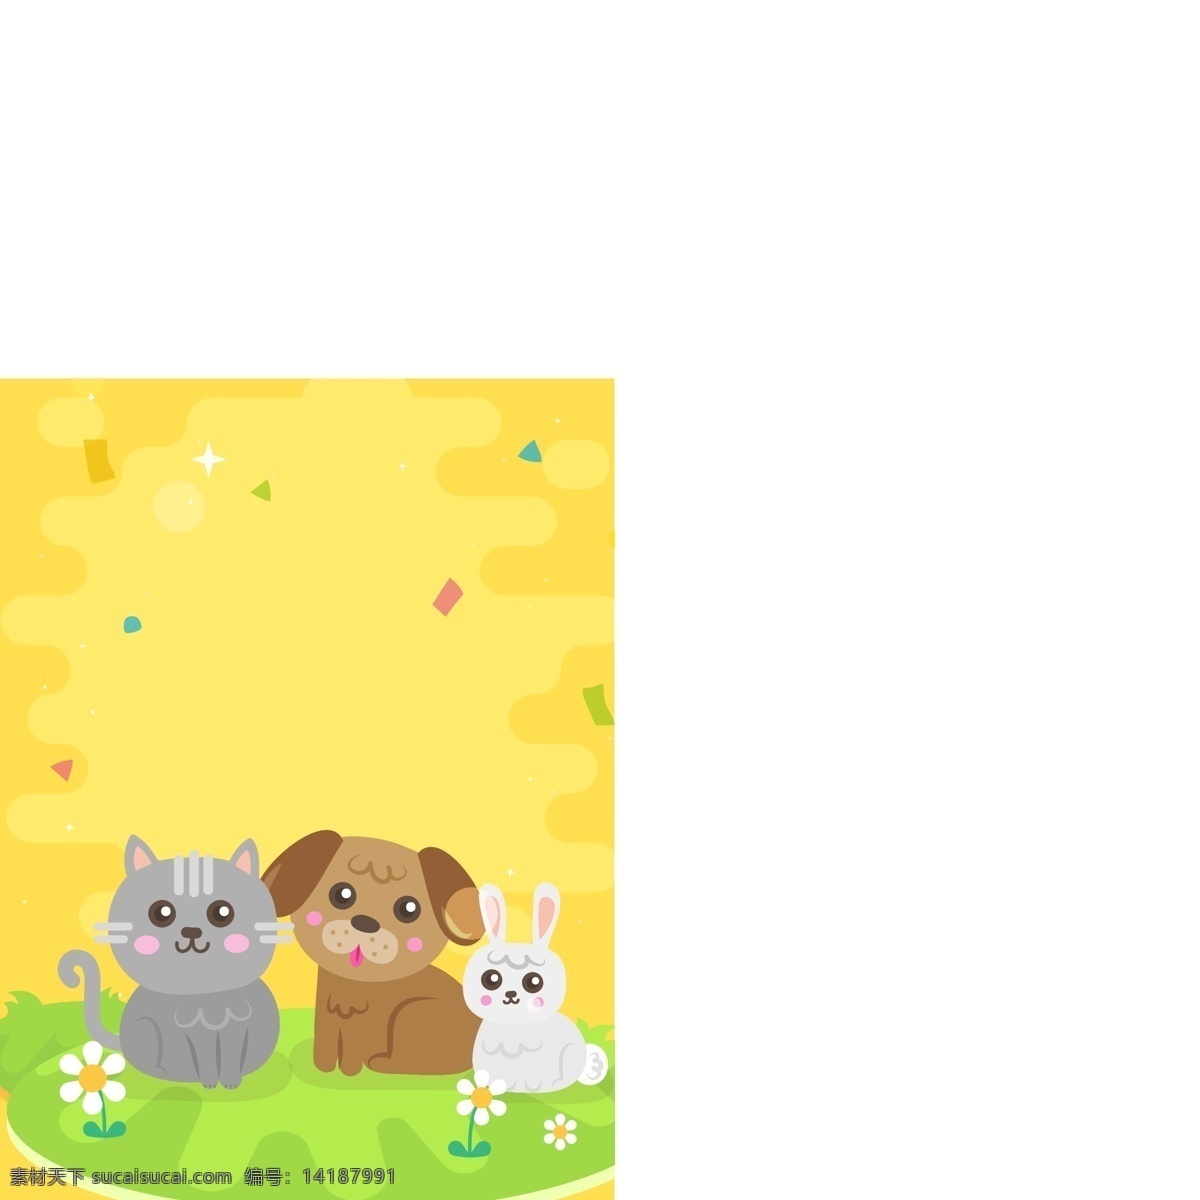 猫 狗 兔 宠物 店 海报 可爱 卡通 背景 宠物店 广告背景 卡通兔